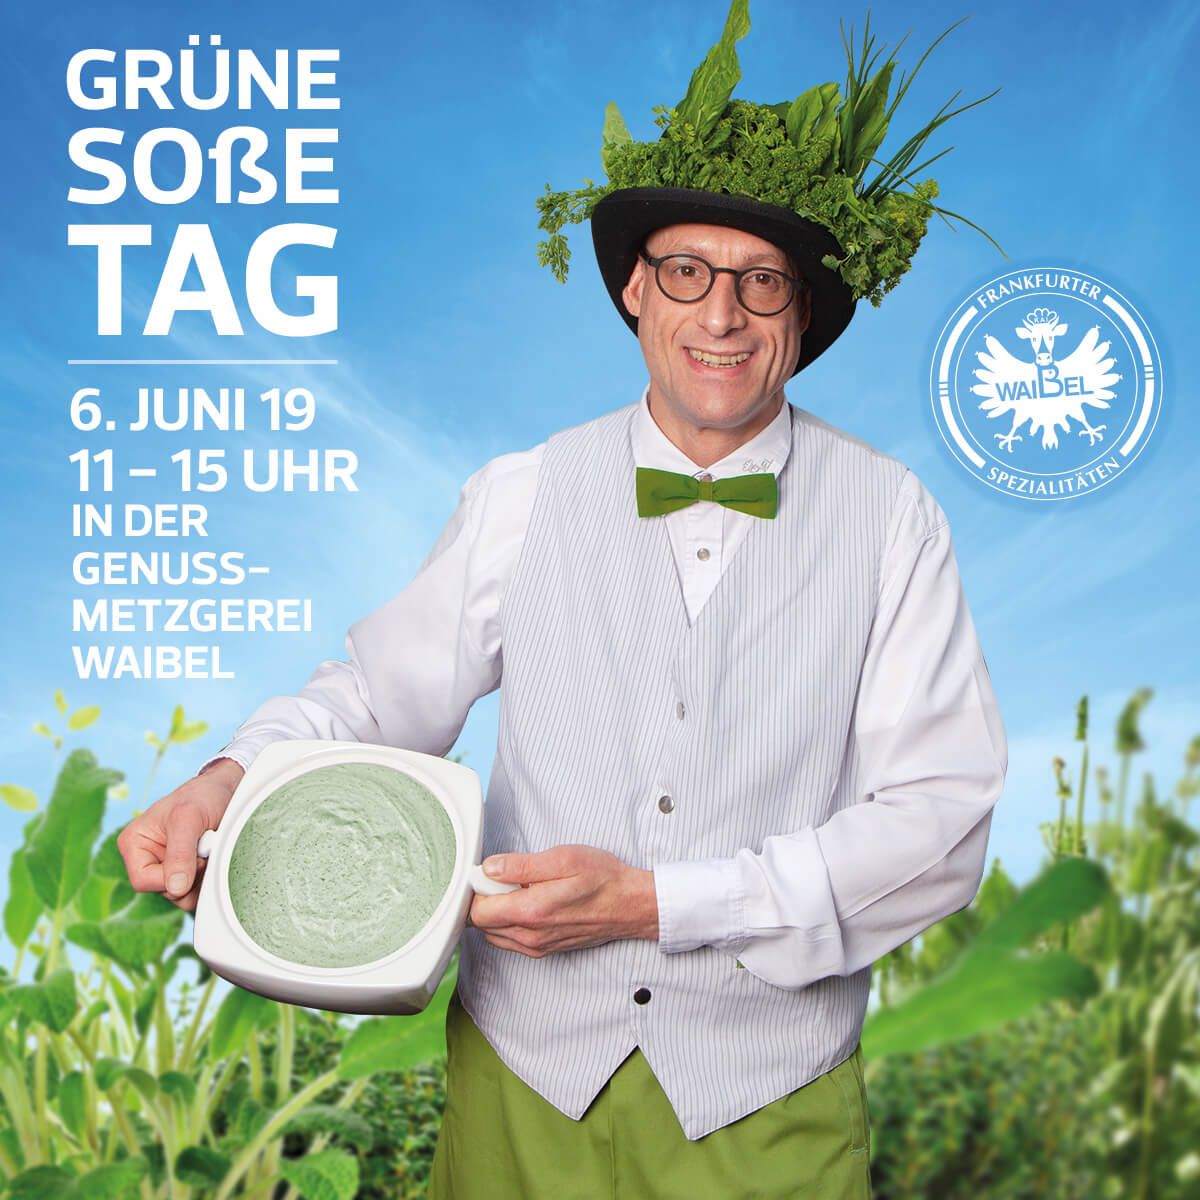 Markenkuss Referenzen: Event Einladung für Screen und Social Media mit Kai Waibel im Kräuter Feld mit Grüner Soße für Metzgerei Waibel